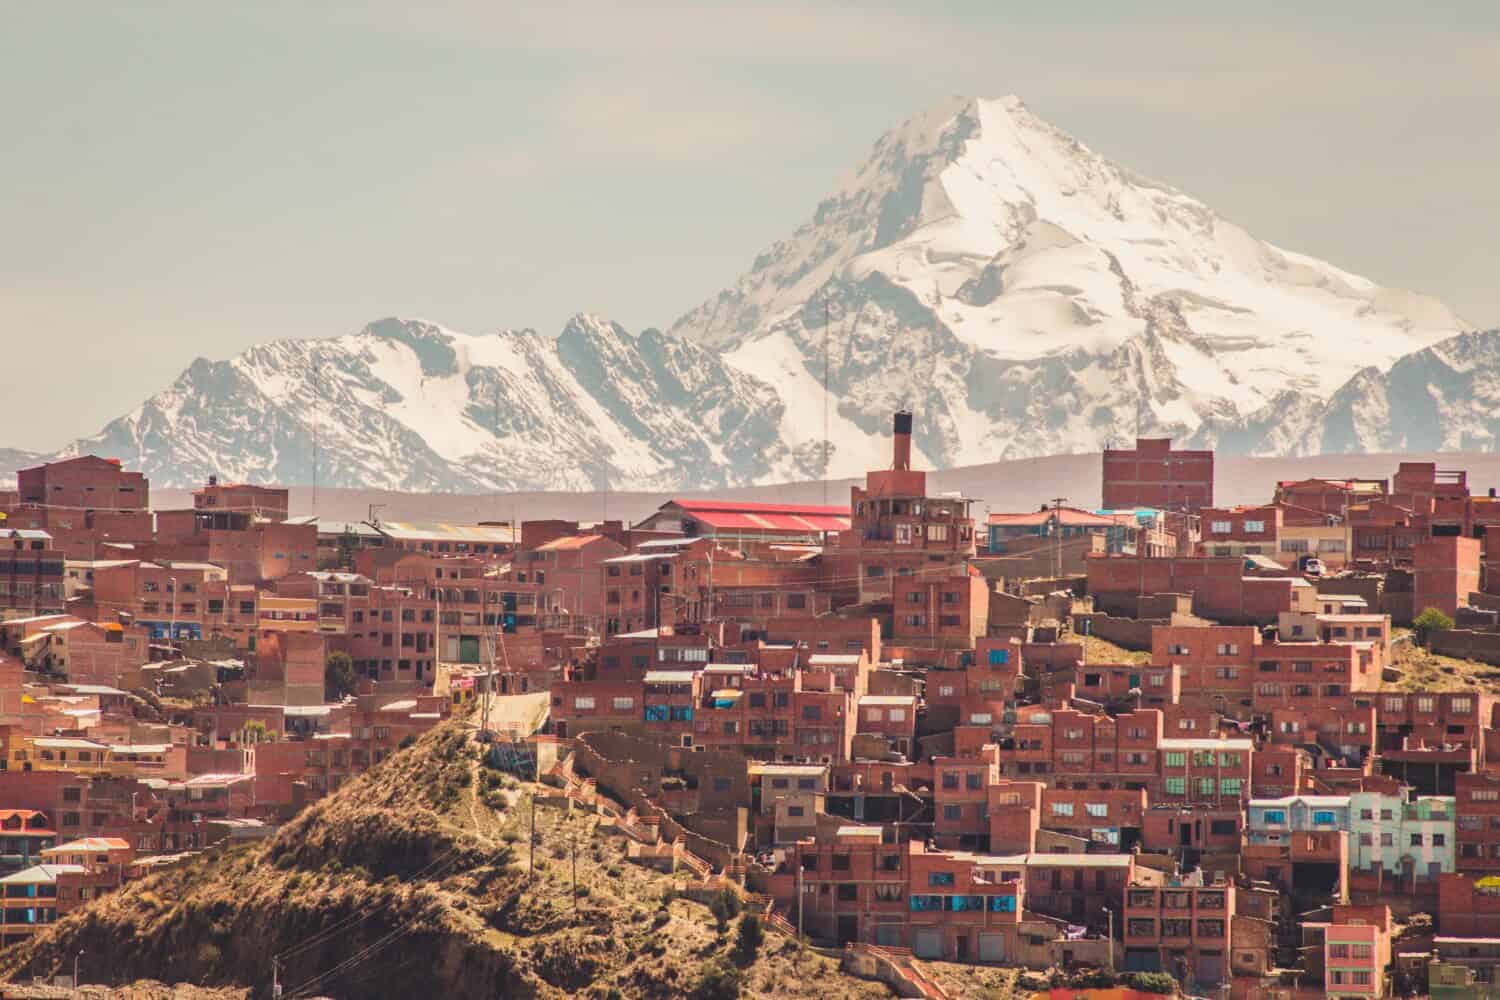 Montagna Huayna Potosí sullo sfondo di case di mattoni a La Paz, Bolivia.